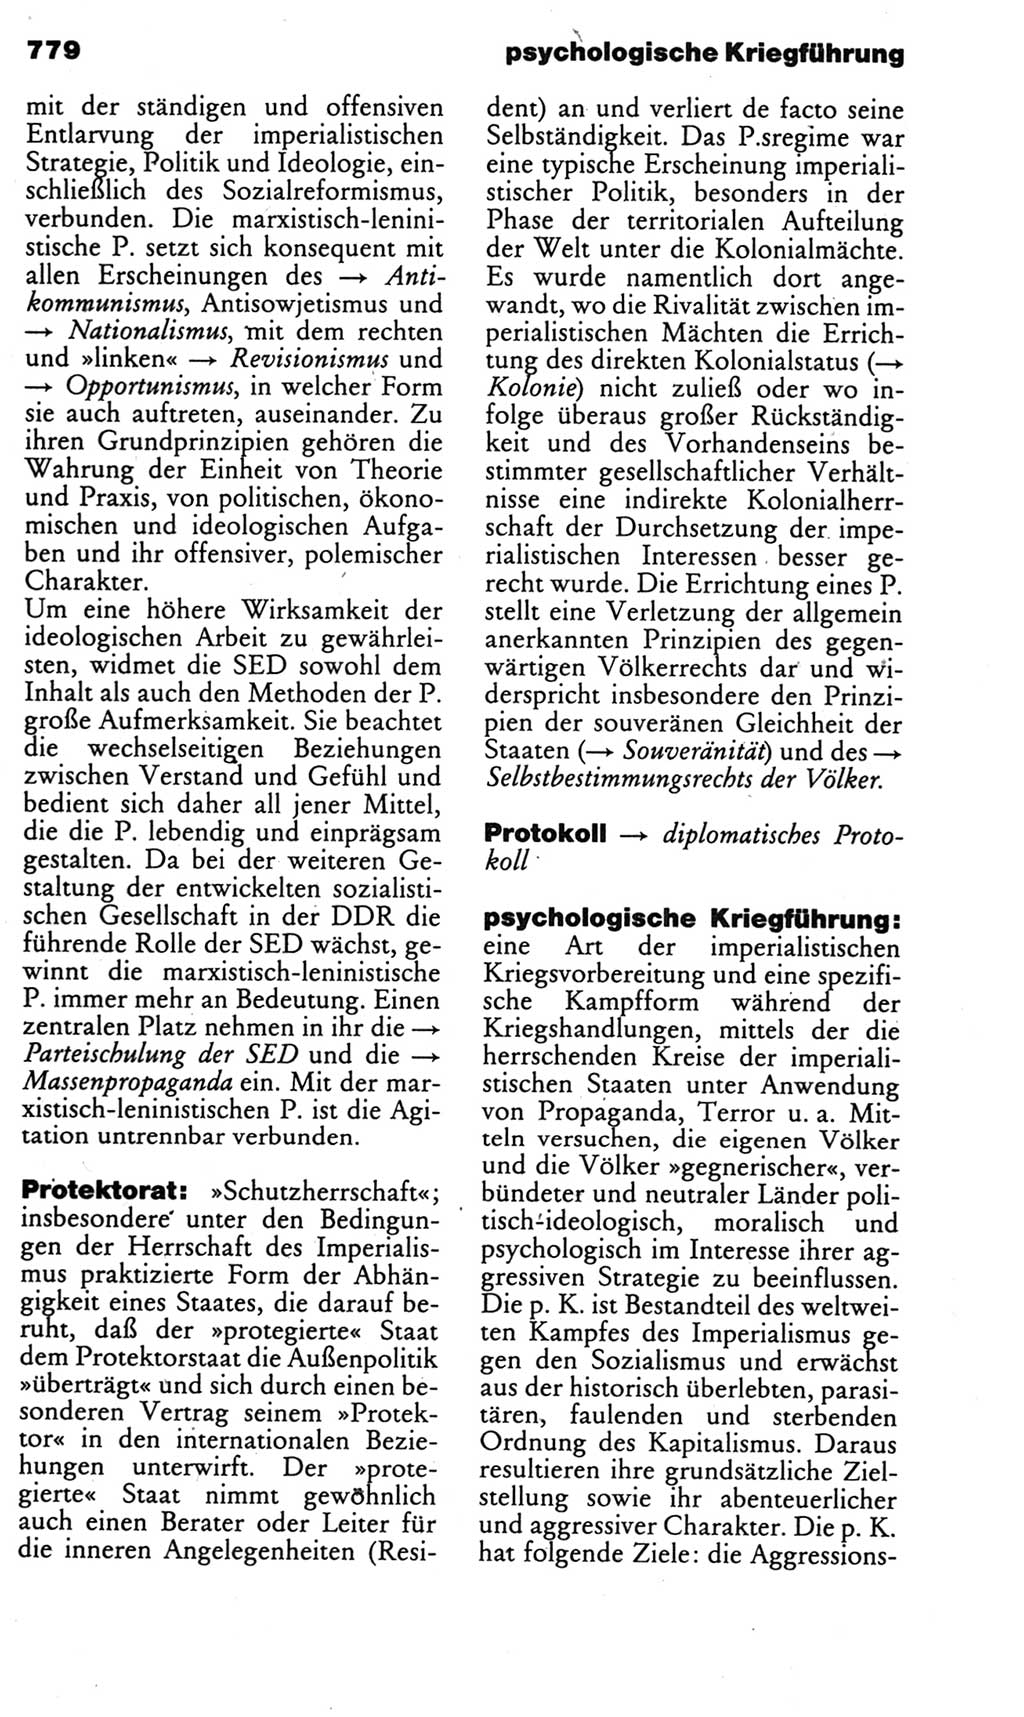 Kleines politisches Wörterbuch [Deutsche Demokratische Republik (DDR)] 1985, Seite 779 (Kl. pol. Wb. DDR 1985, S. 779)